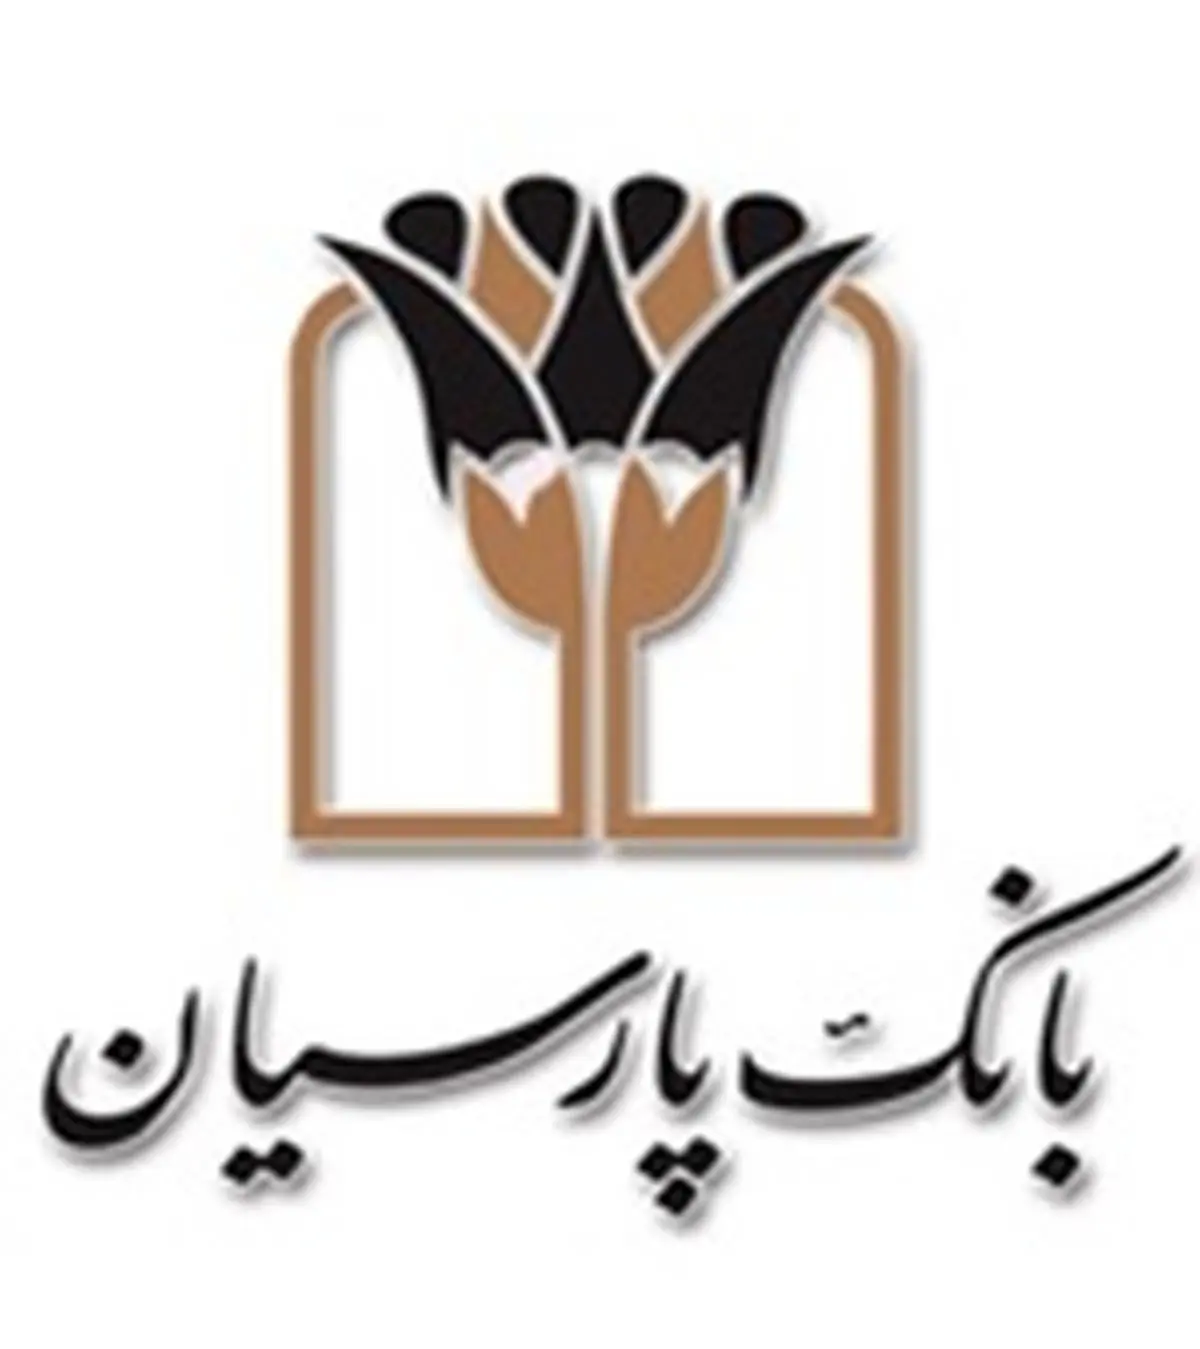 درج اوراق گواهی اعتبار مولد (گام) بانک پارسیان با نماد "اگ020354"